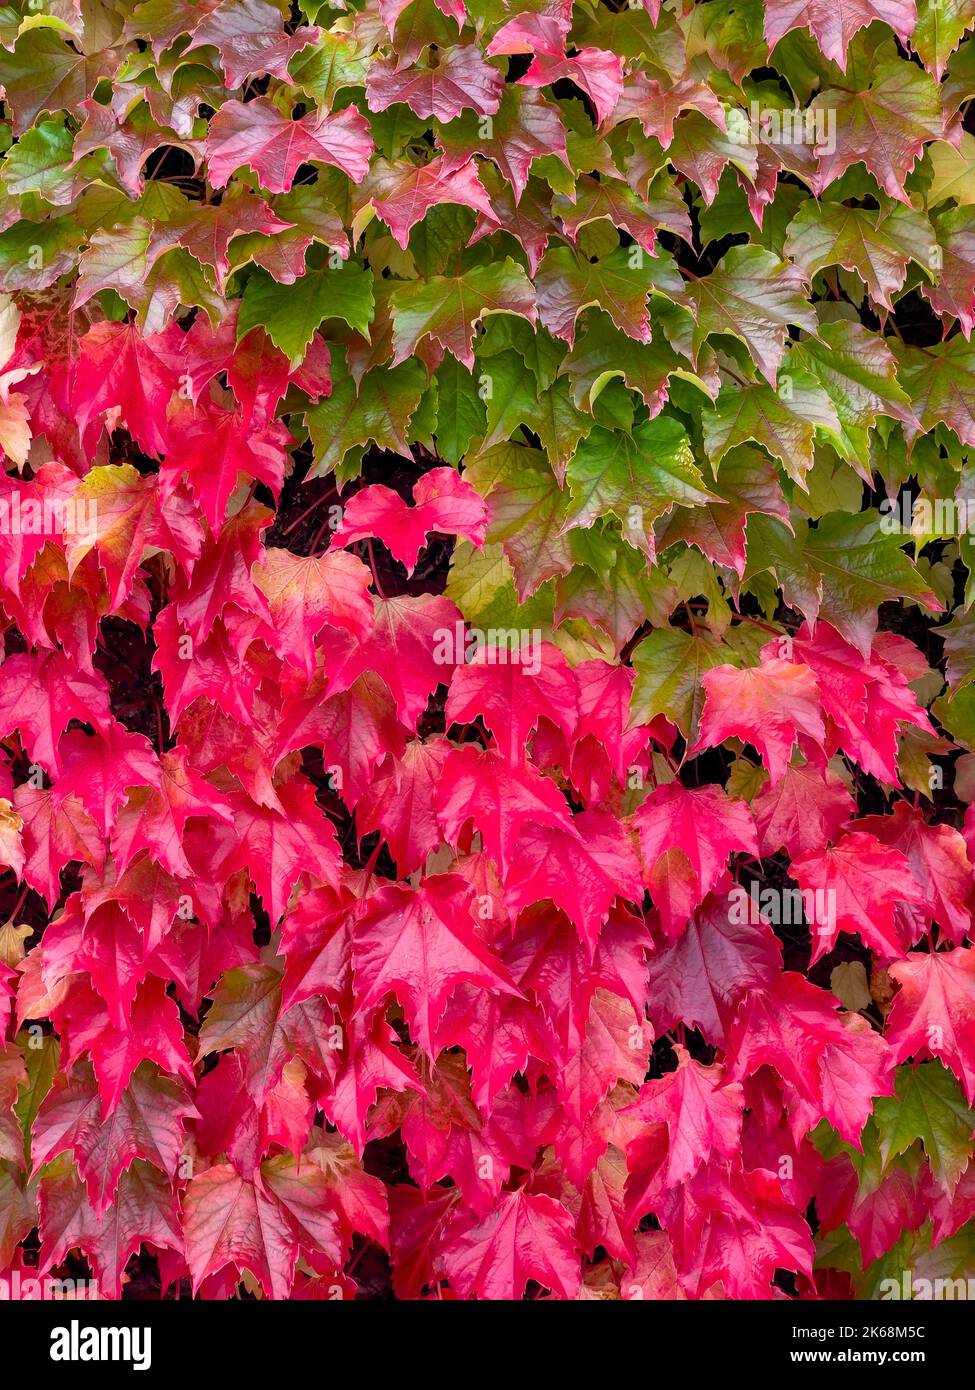 Hojas rojas y verdes de Parthenocissus Tricuspidata comúnmente llamada Hiedra de Boston que crecen en una pared en otoño. Foto de stock